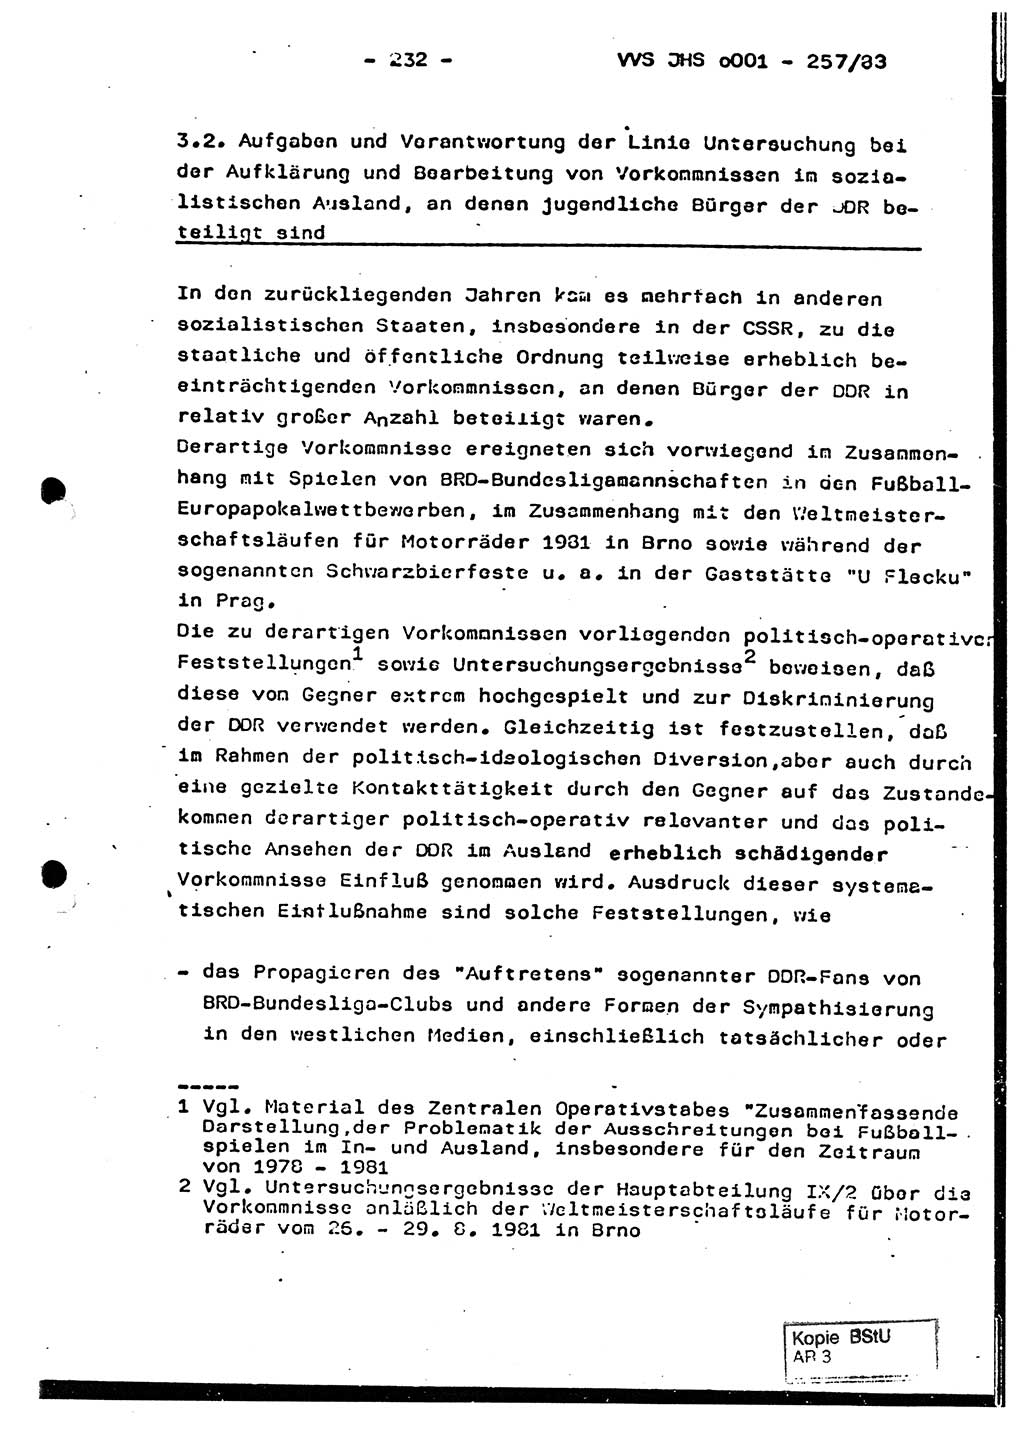 Dissertation, Oberst Helmut Lubas (BV Mdg.), Oberstleutnant Manfred Eschberger (HA IX), Oberleutnant Hans-Jürgen Ludwig (JHS), Ministerium für Staatssicherheit (MfS) [Deutsche Demokratische Republik (DDR)], Juristische Hochschule (JHS), Vertrauliche Verschlußsache (VVS) o001-257/83, Potsdam 1983, Seite 232 (Diss. MfS DDR JHS VVS o001-257/83 1983, S. 232)